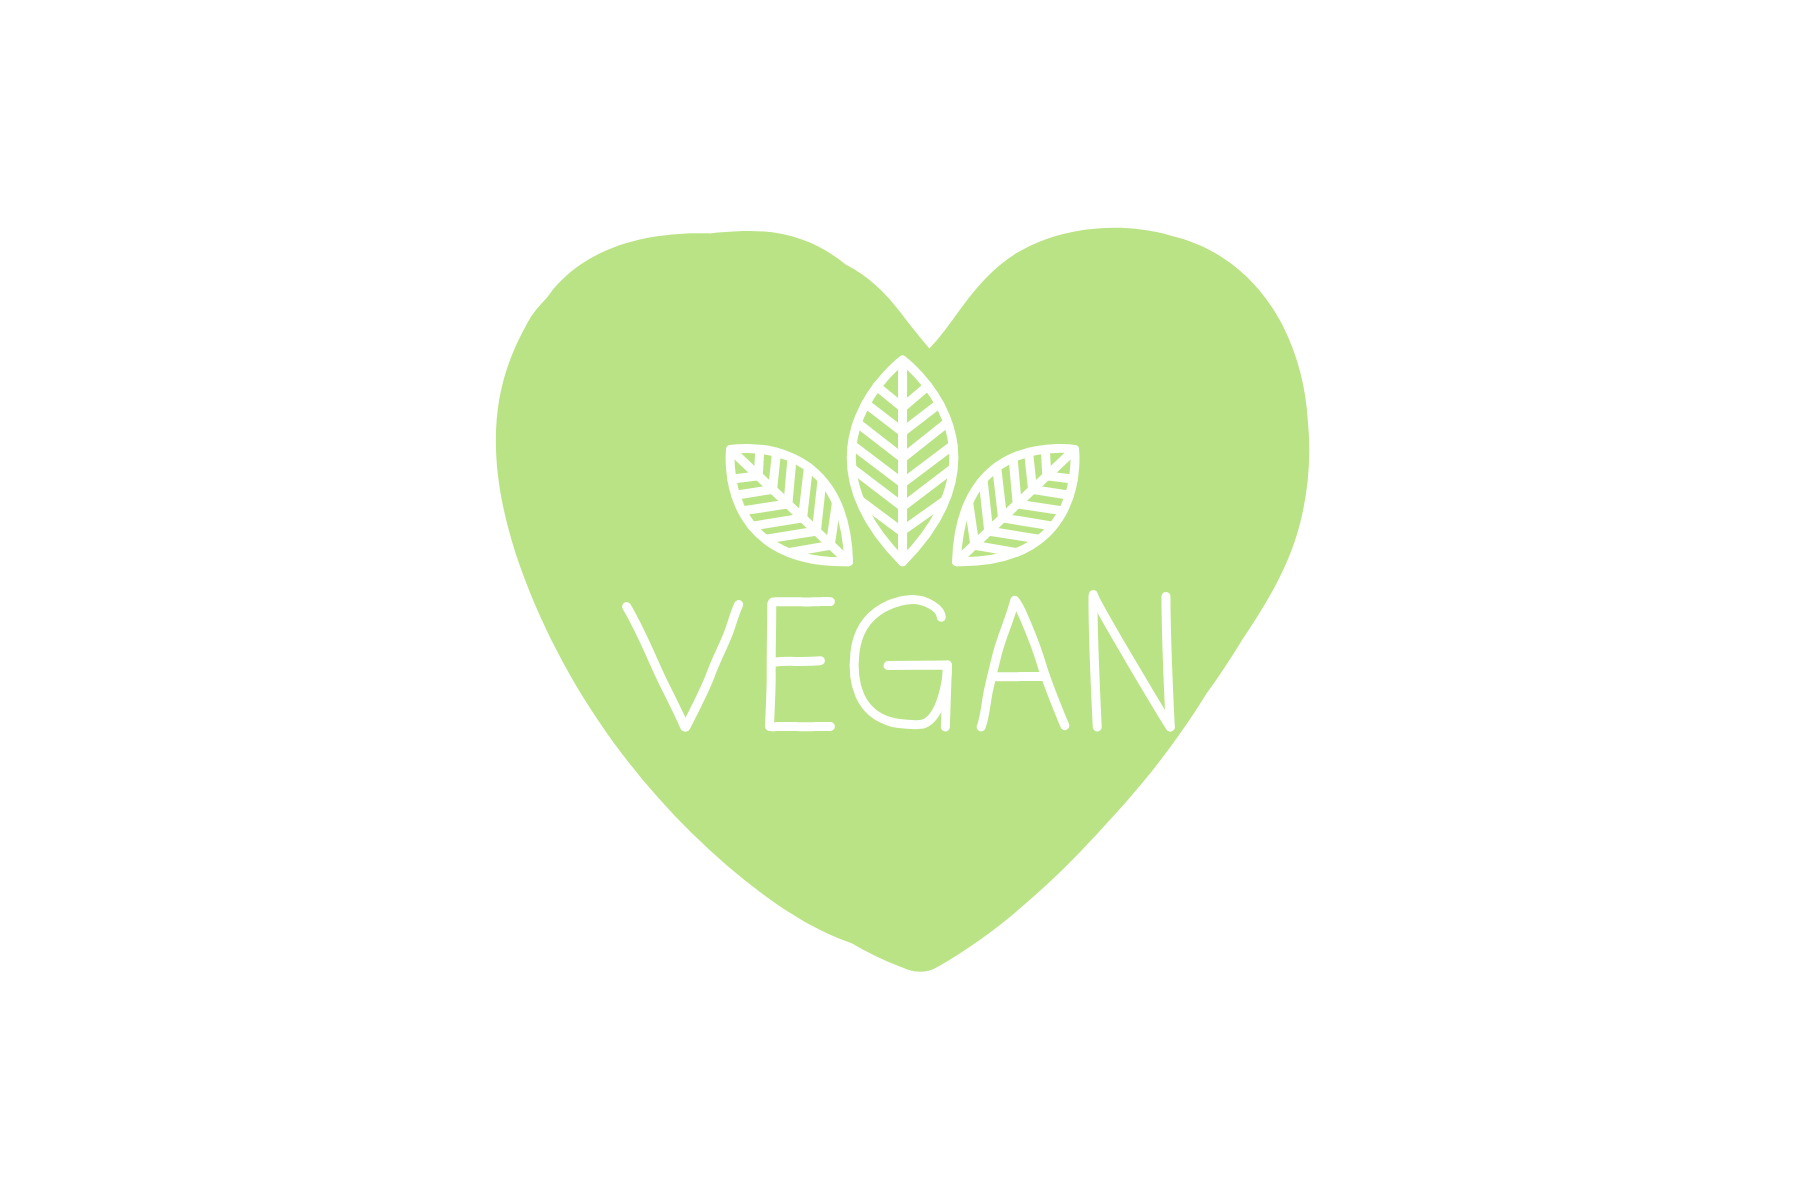 Veganuary: 10 tips for going vegan